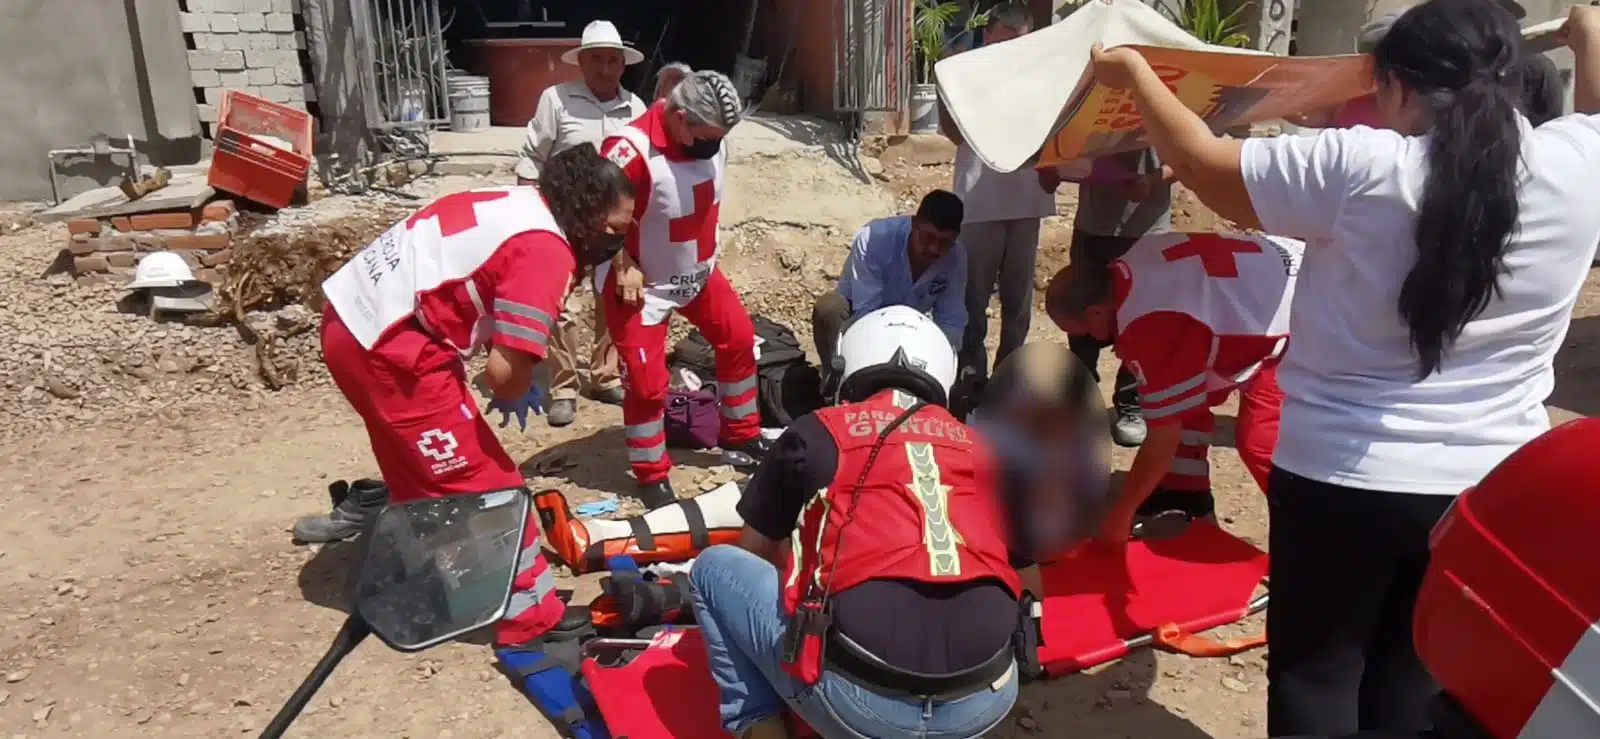 Paramédicos de cruz roja atendiendo a joven en ele suelo